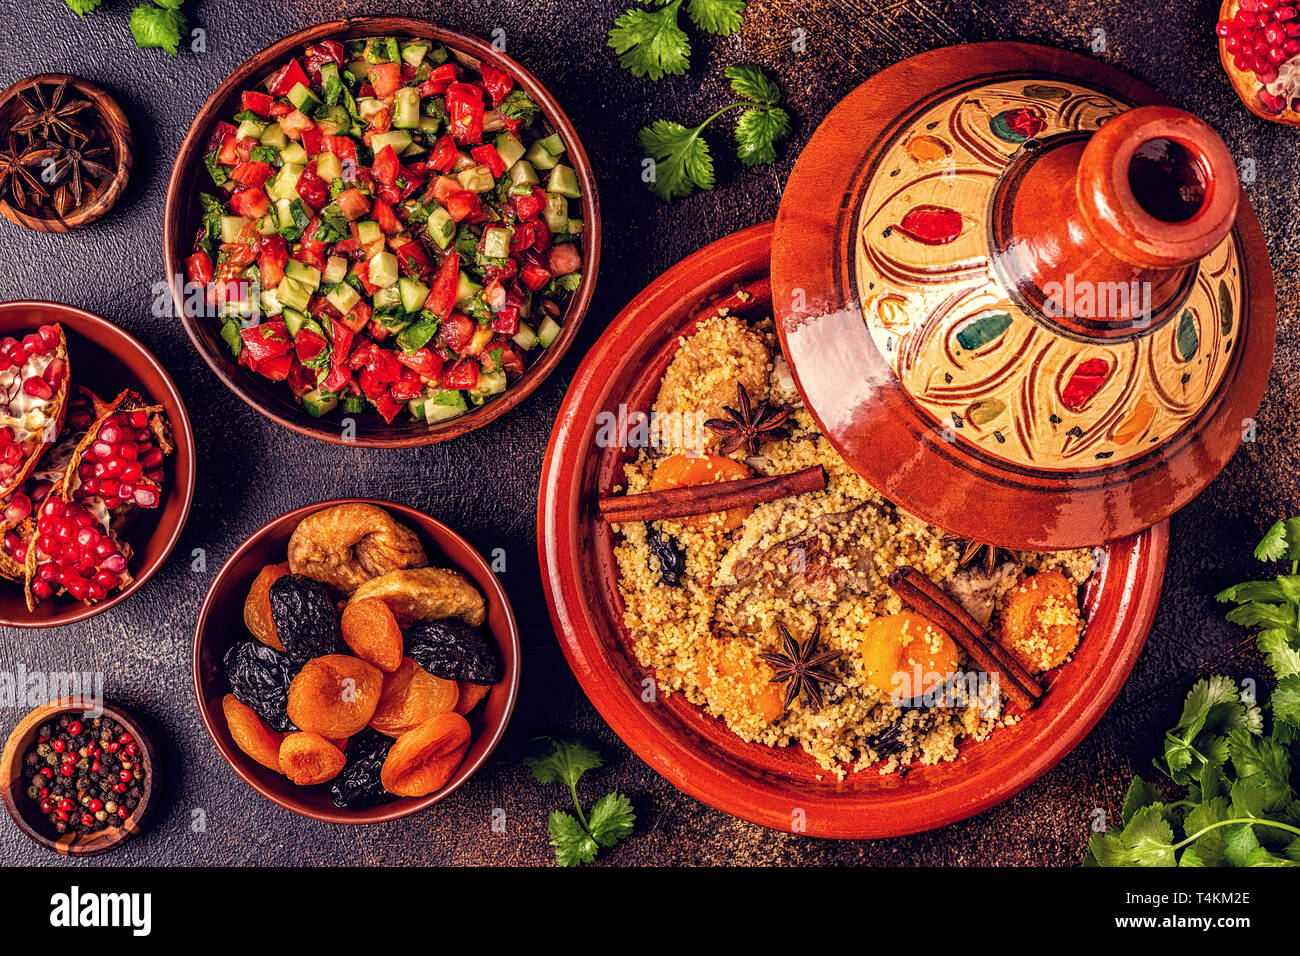 Cuisine marocaine tajine de poulet aux fruits secs et épices, vue du dessus. Banque D'Images